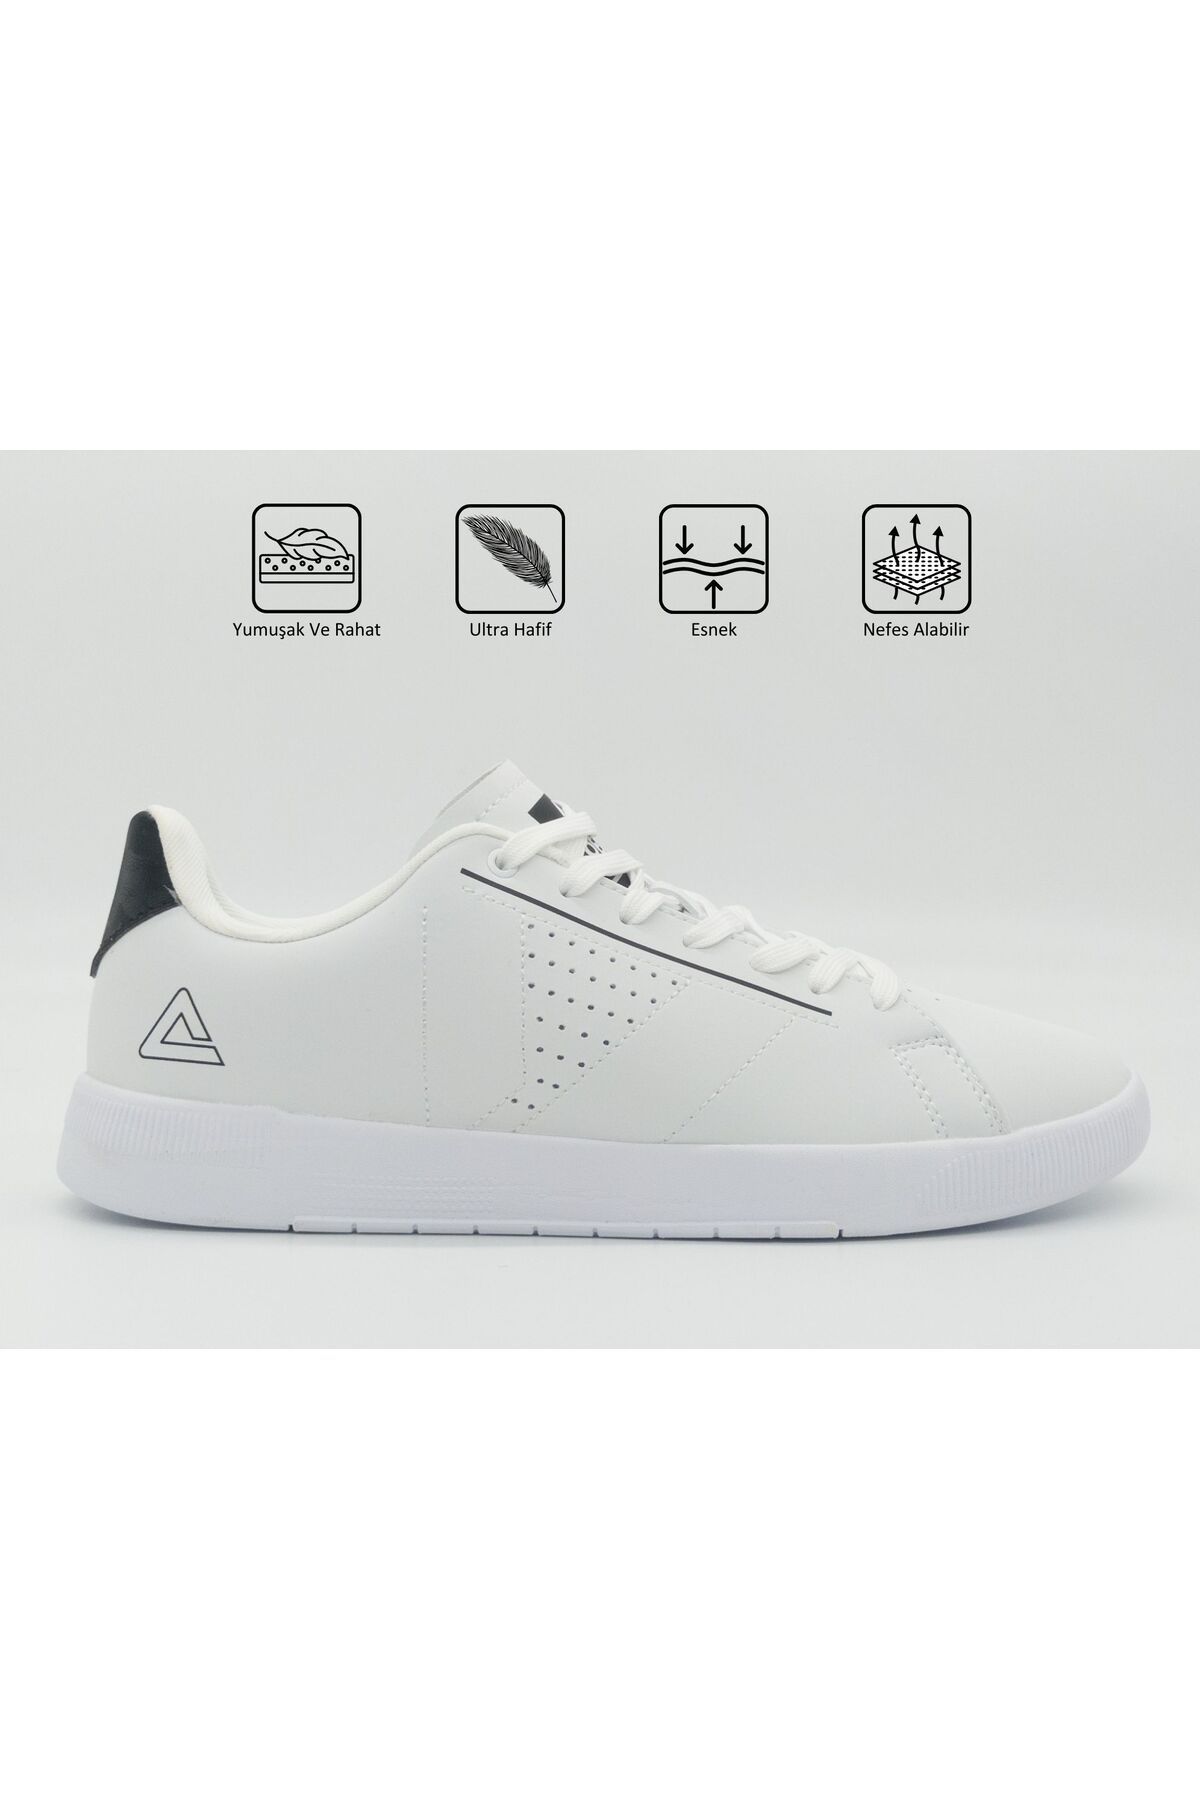 Peak Unisex Beyaz Kaymaz Taban Ortopedik Garantili Rahat Hafif Günlük Koşu Sneaker Fitness Spor Ayakkabı